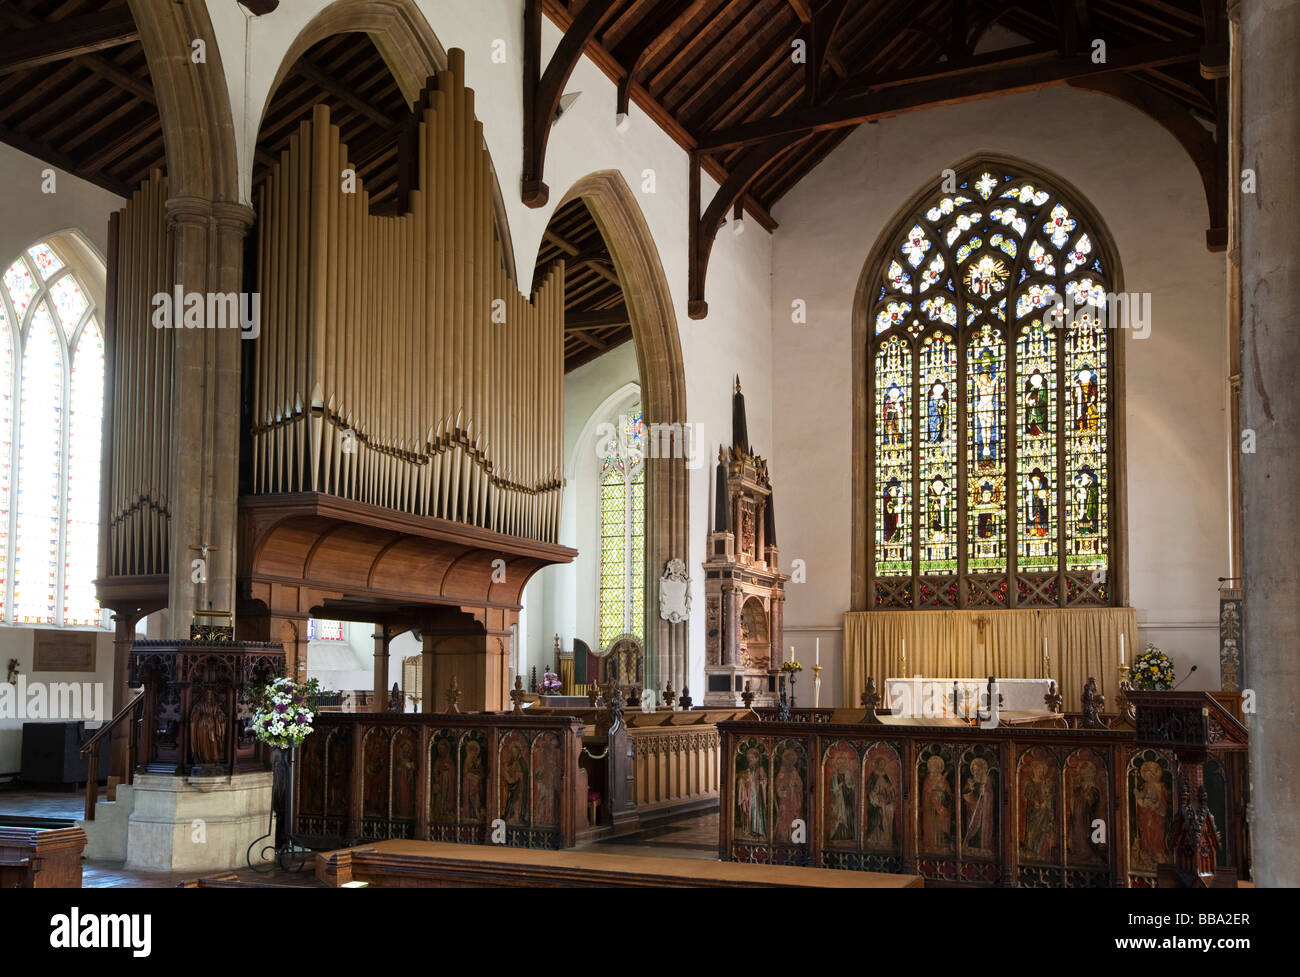 Regno Unito Inghilterra Norfolk North Walsham St Nicholas Chiesa Parrocchiale interno pulpito rood schermo e santuario Foto Stock